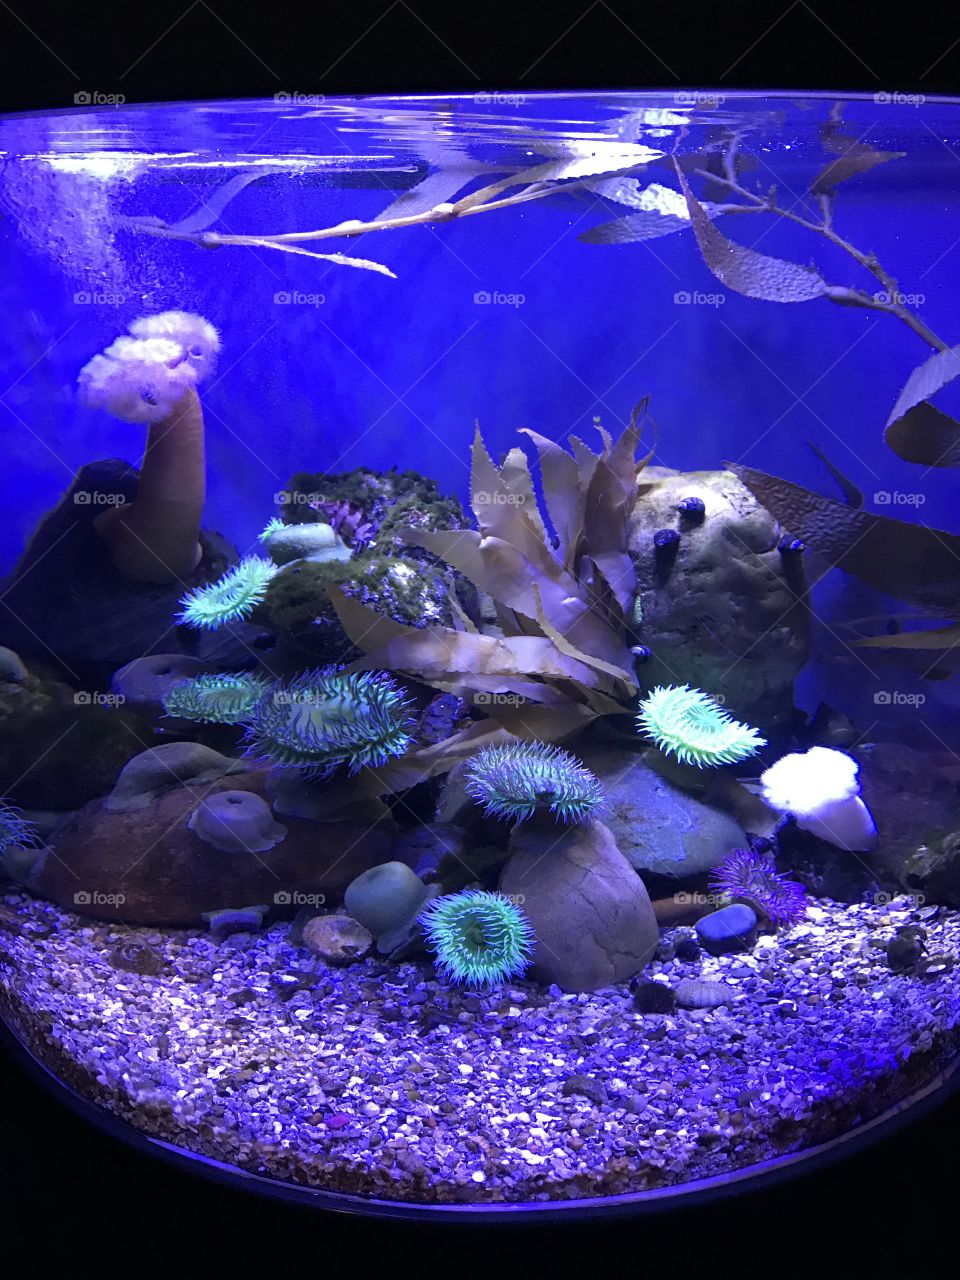 A day at the aquarium 